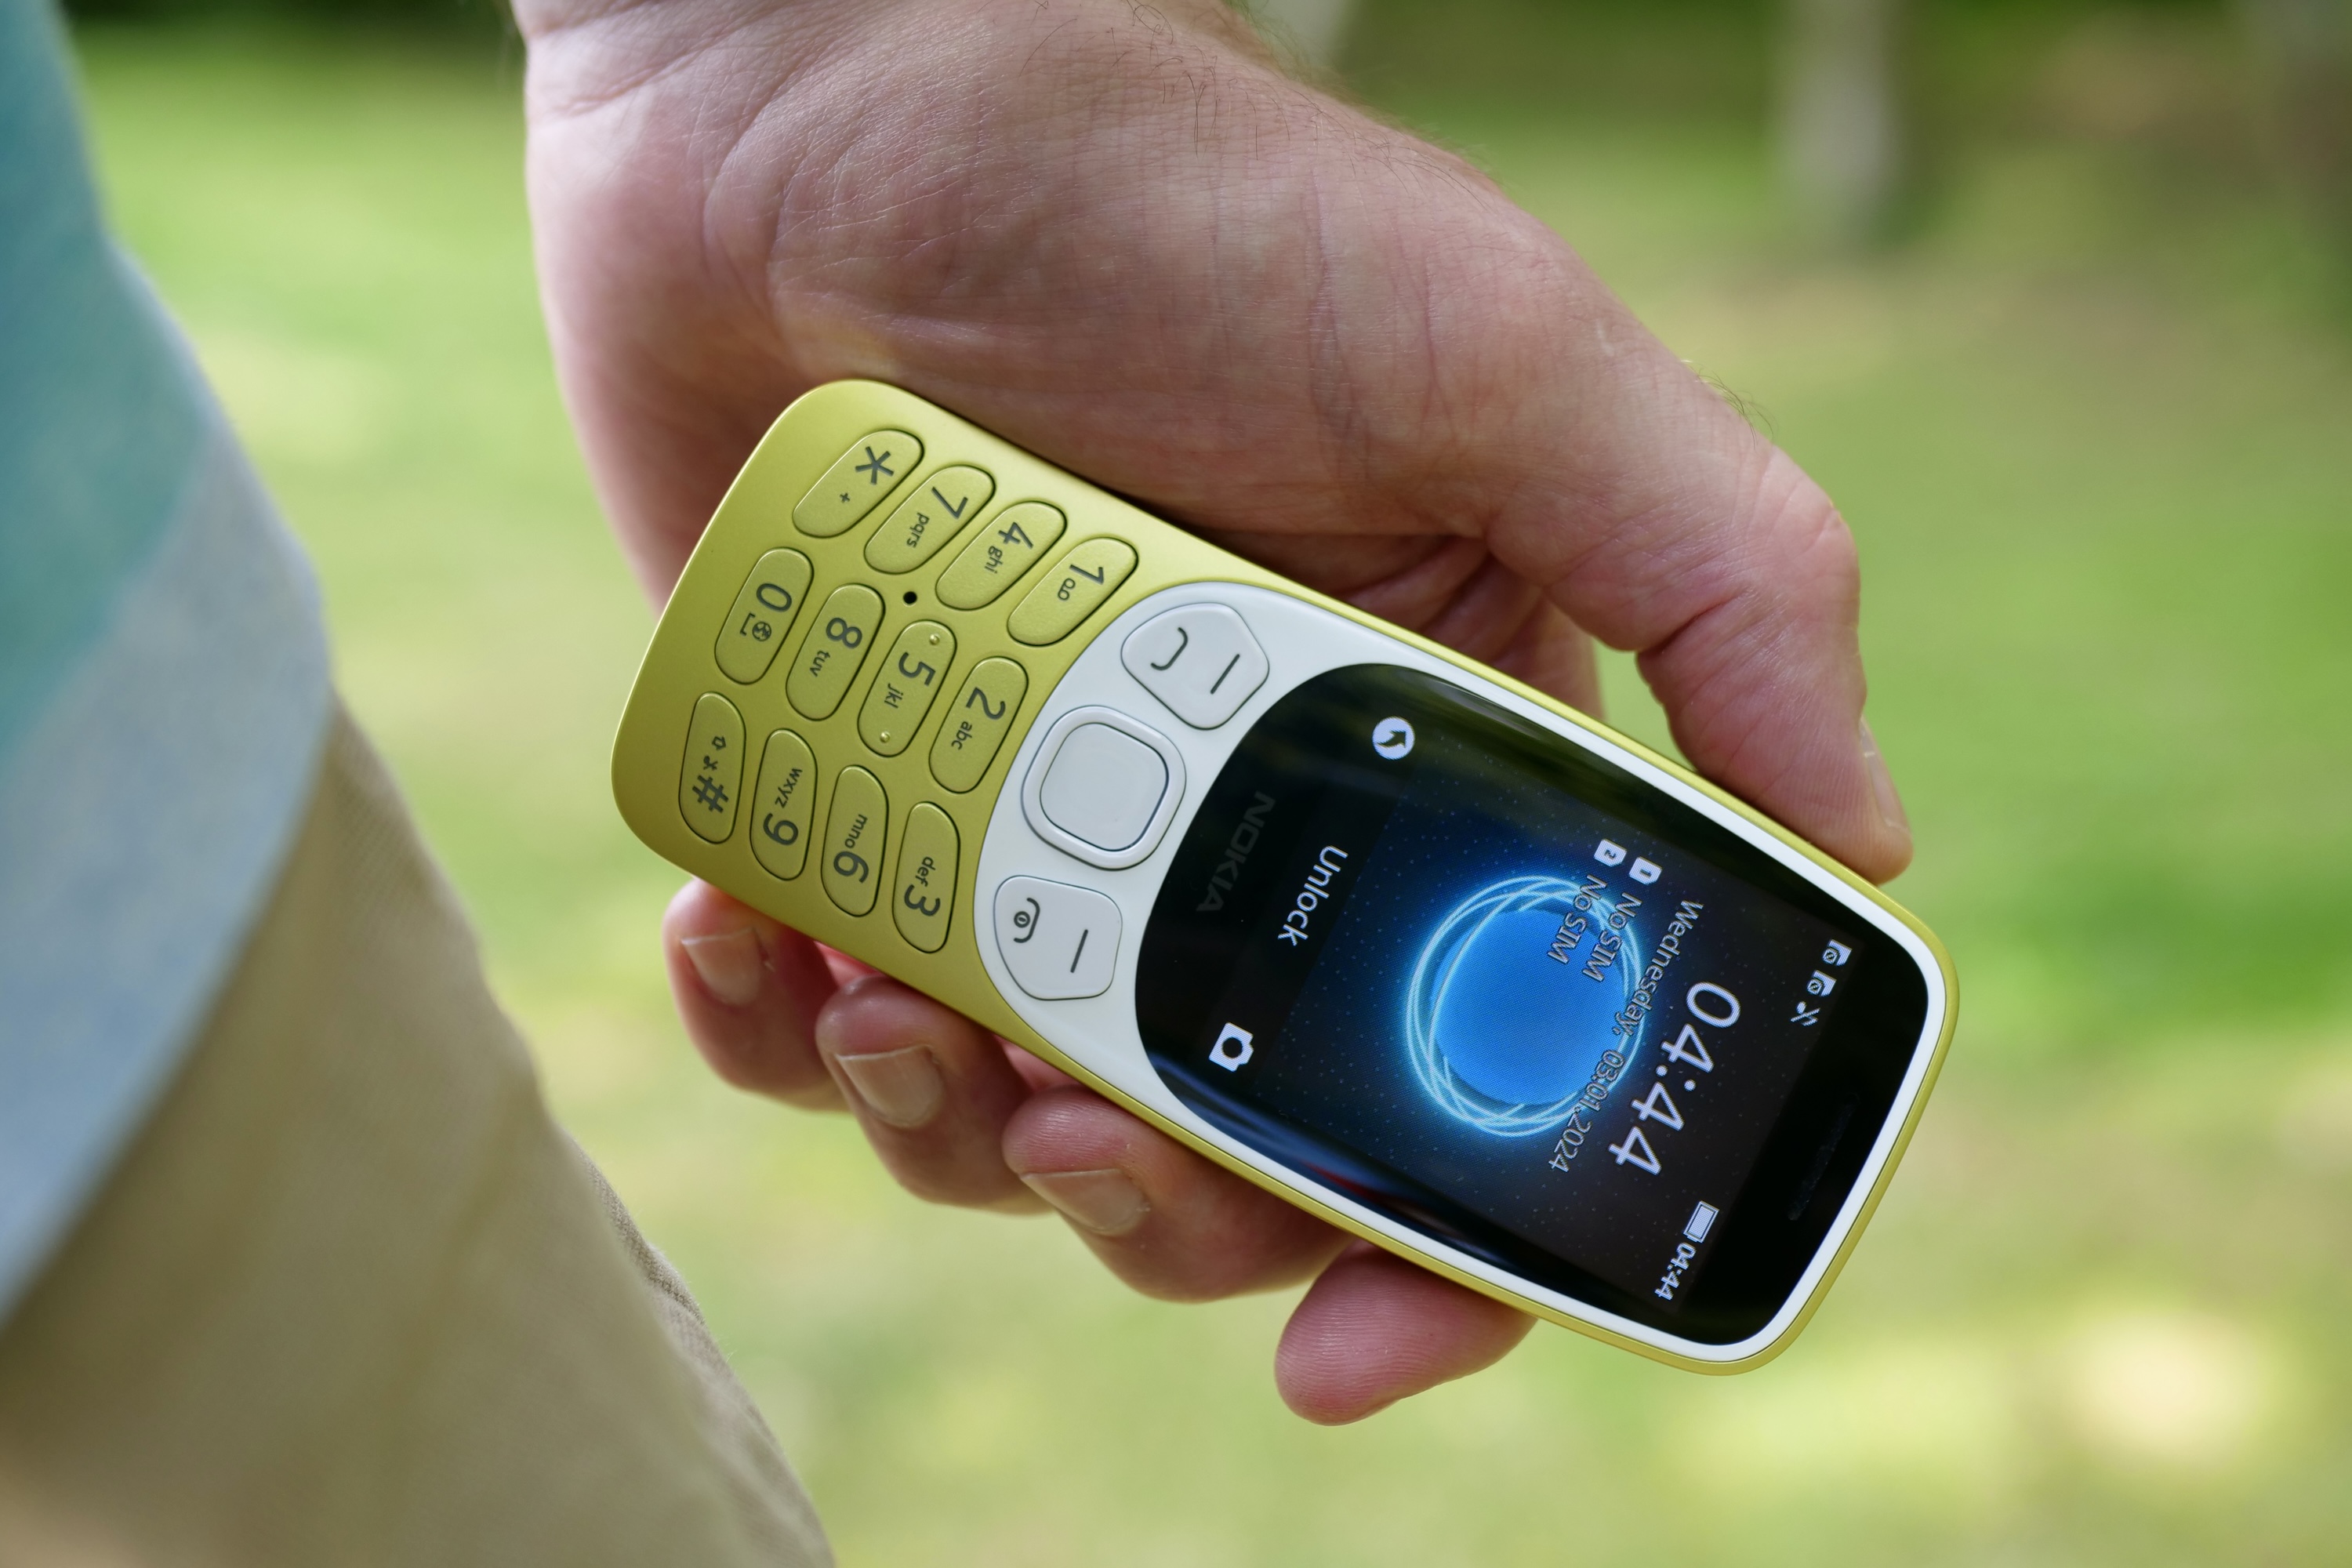 Un hombre sosteniendo un Nokia 3210, mostrando la pantalla.